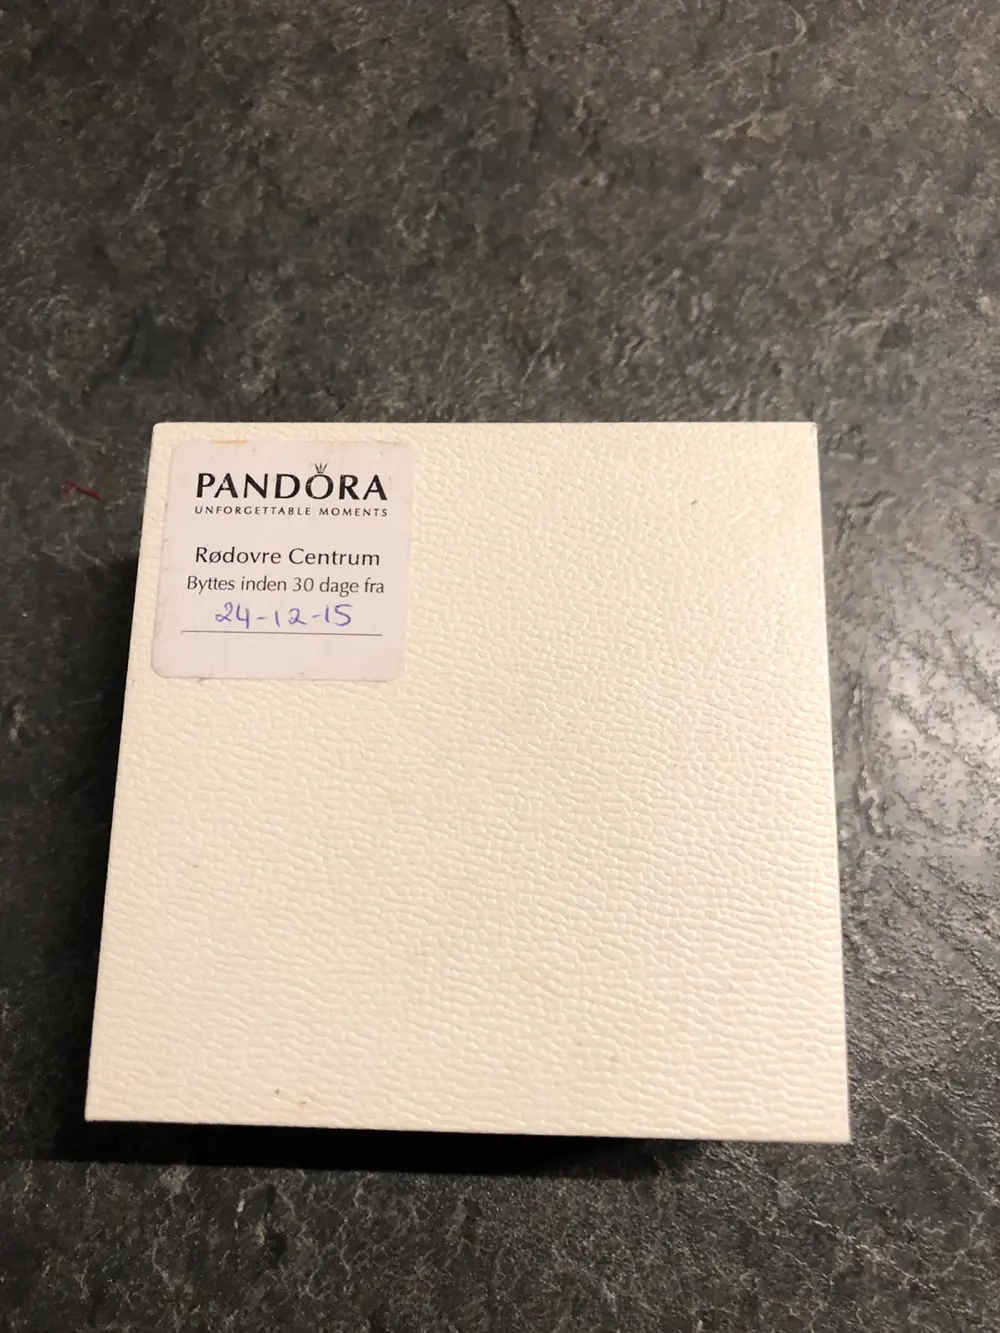 kondom gåde Anvendelse Køb Pandora Armbånd og øreringe af Nasira på Reshopper · Shop secondhand  til børn, mor og bolig